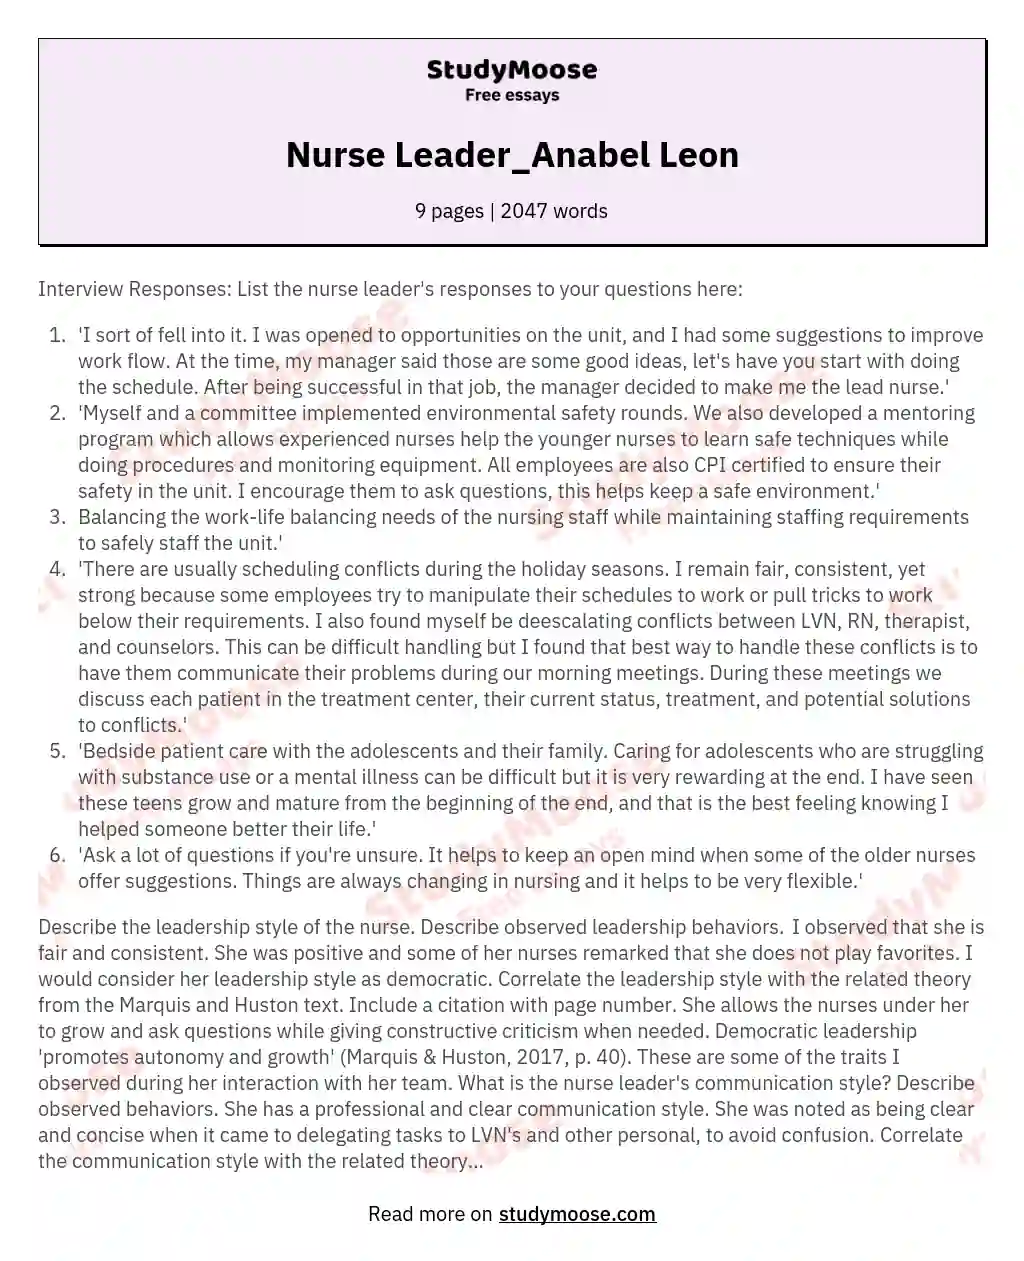 Nurse Leader_Anabel Leon essay